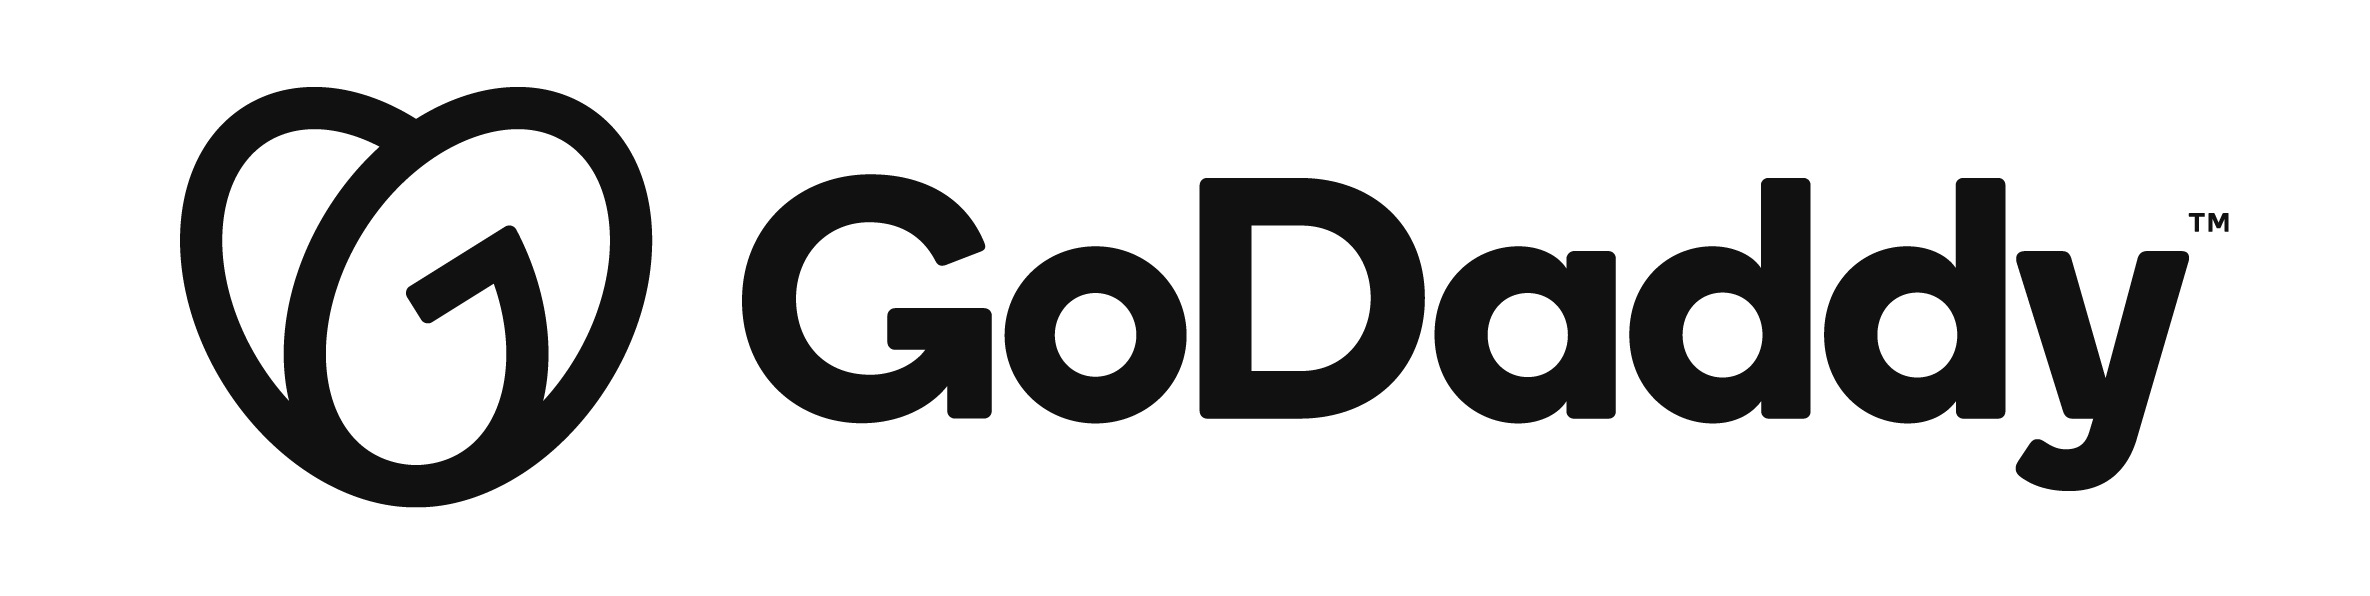 GoDaddy Company Logo